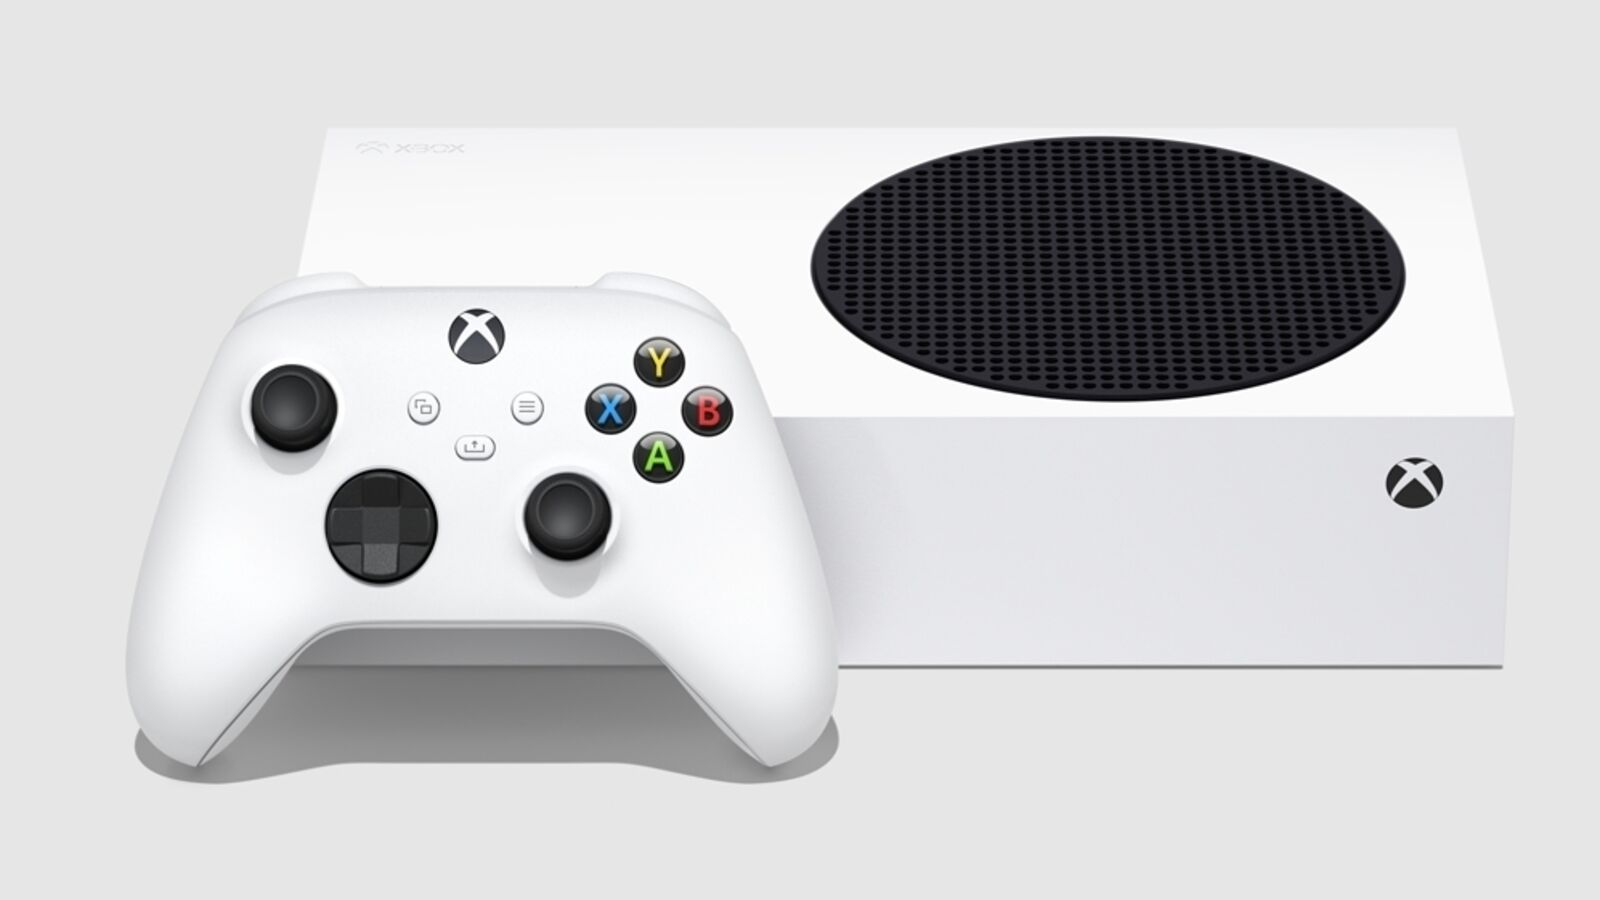 Oferta do Xbox Series X nos EUA deve seguir limitada até junho